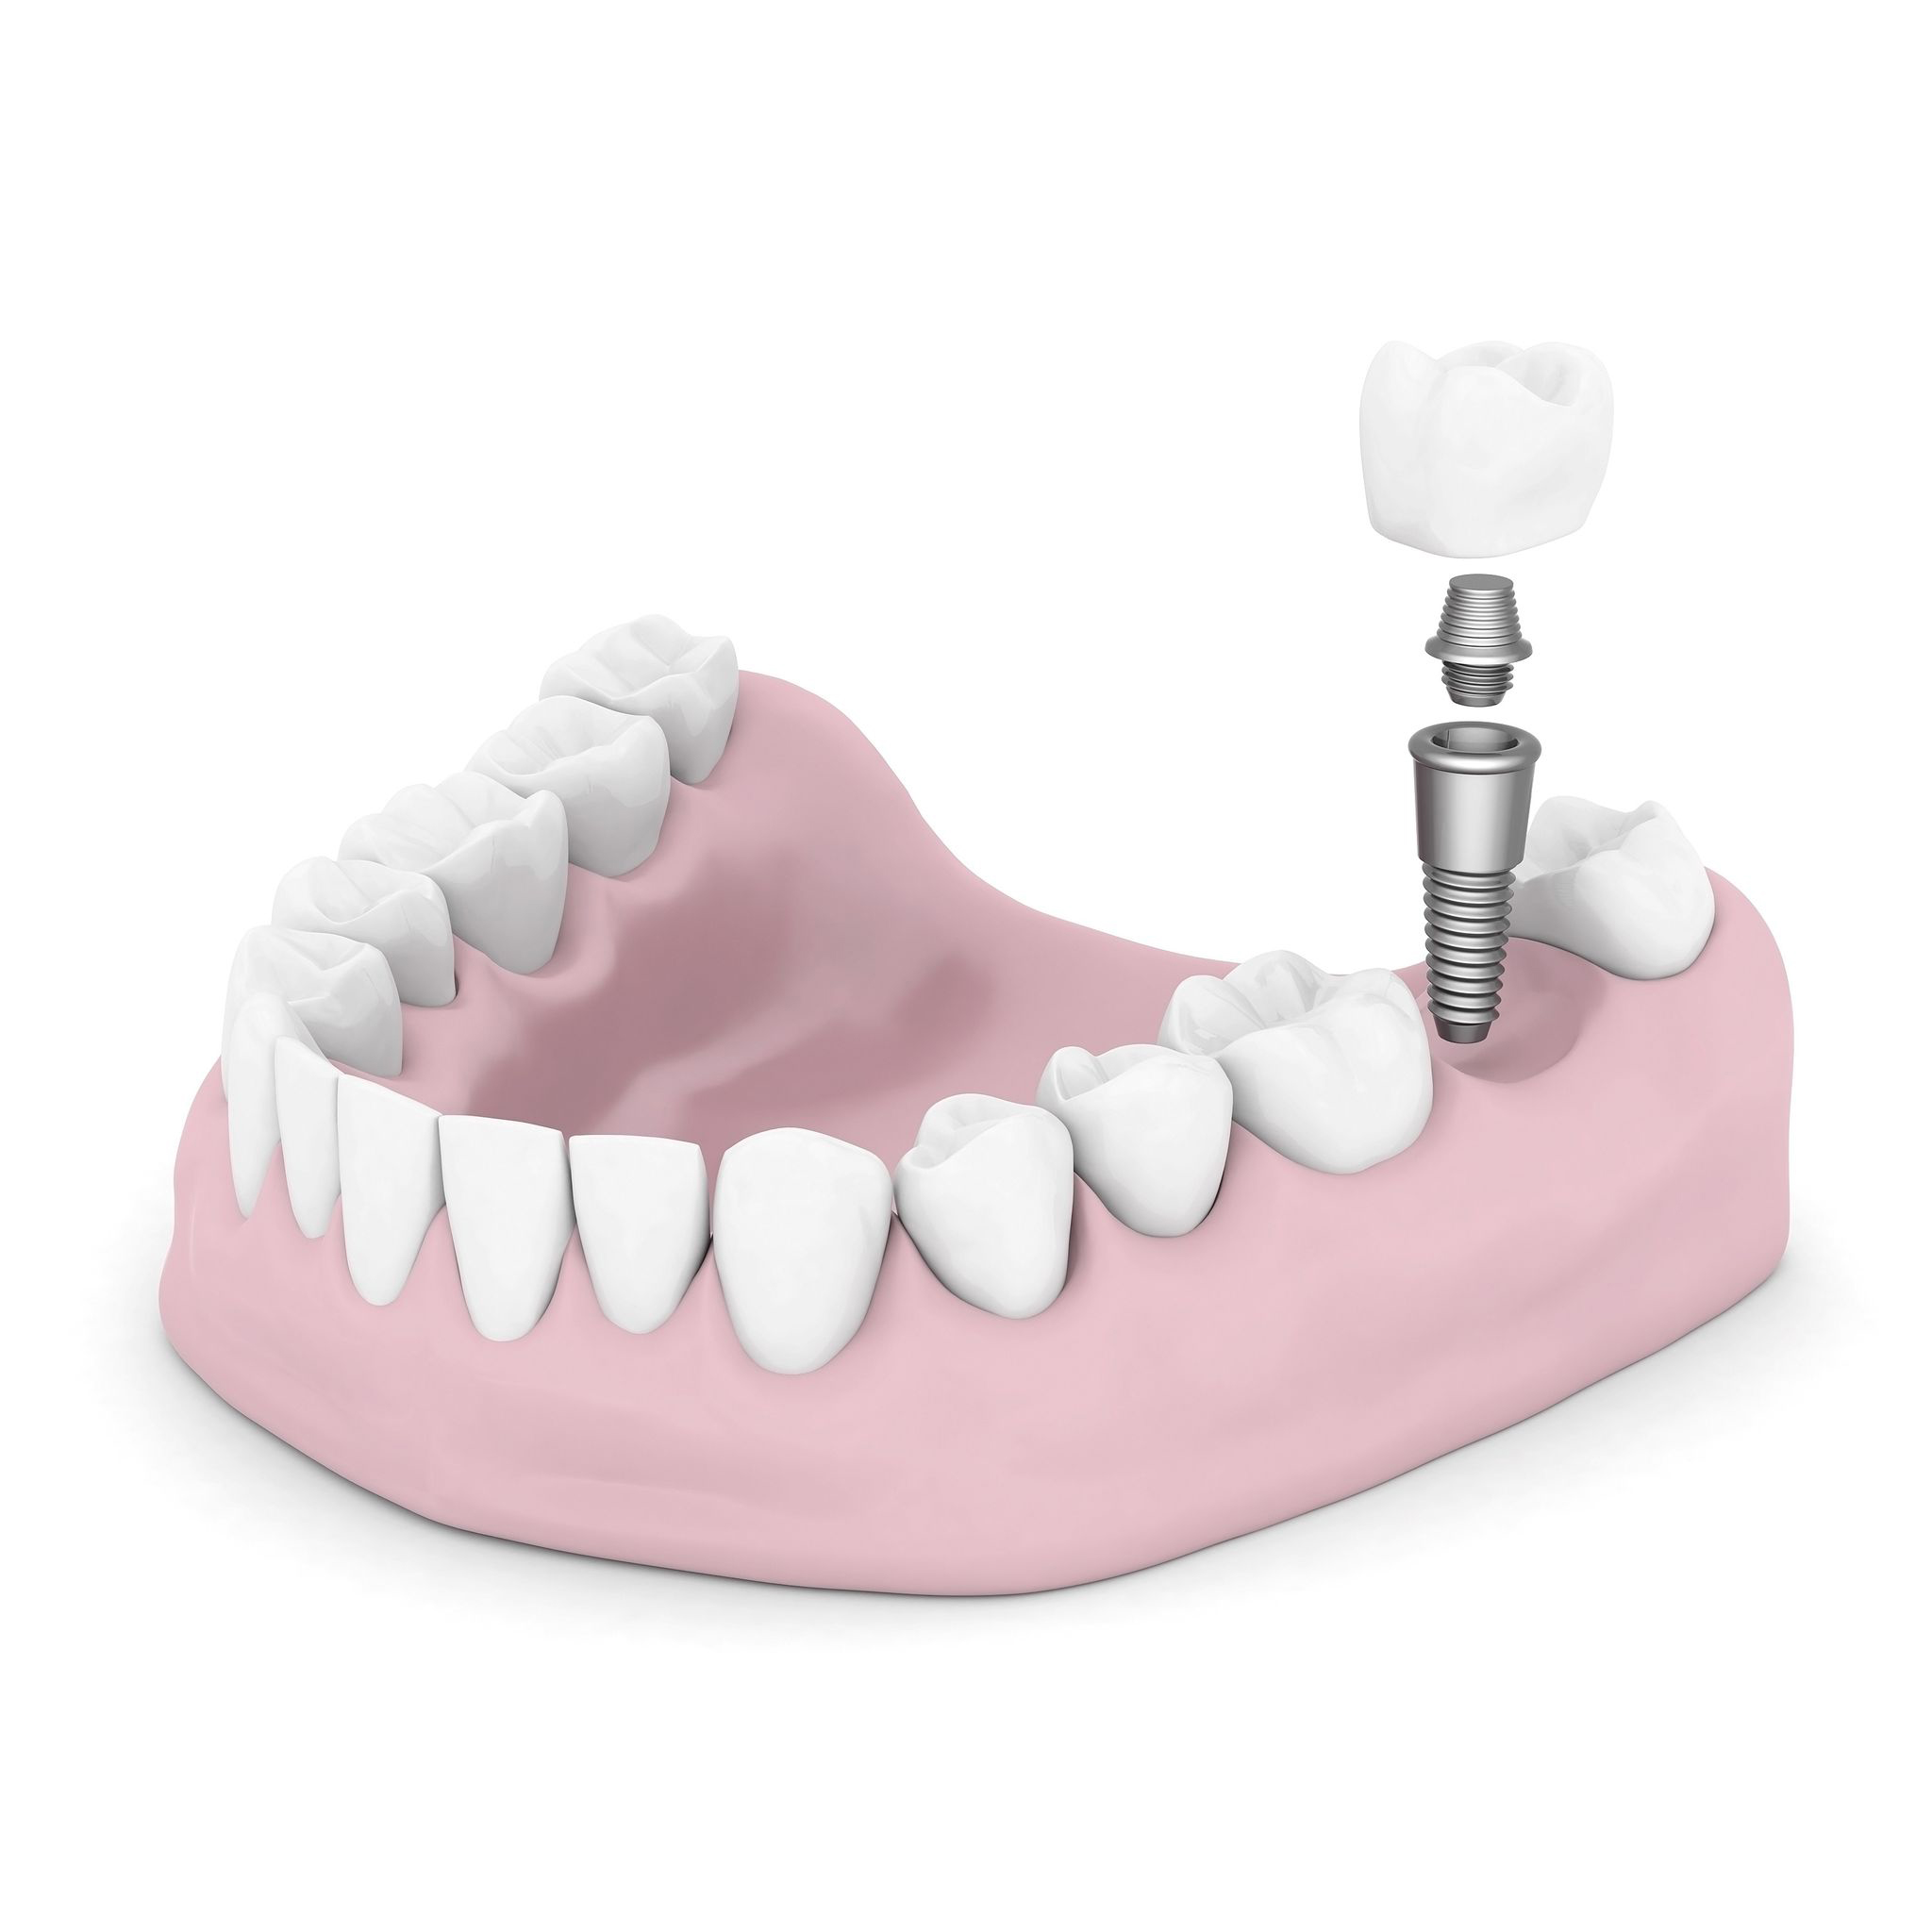 The Loop Dental Implants